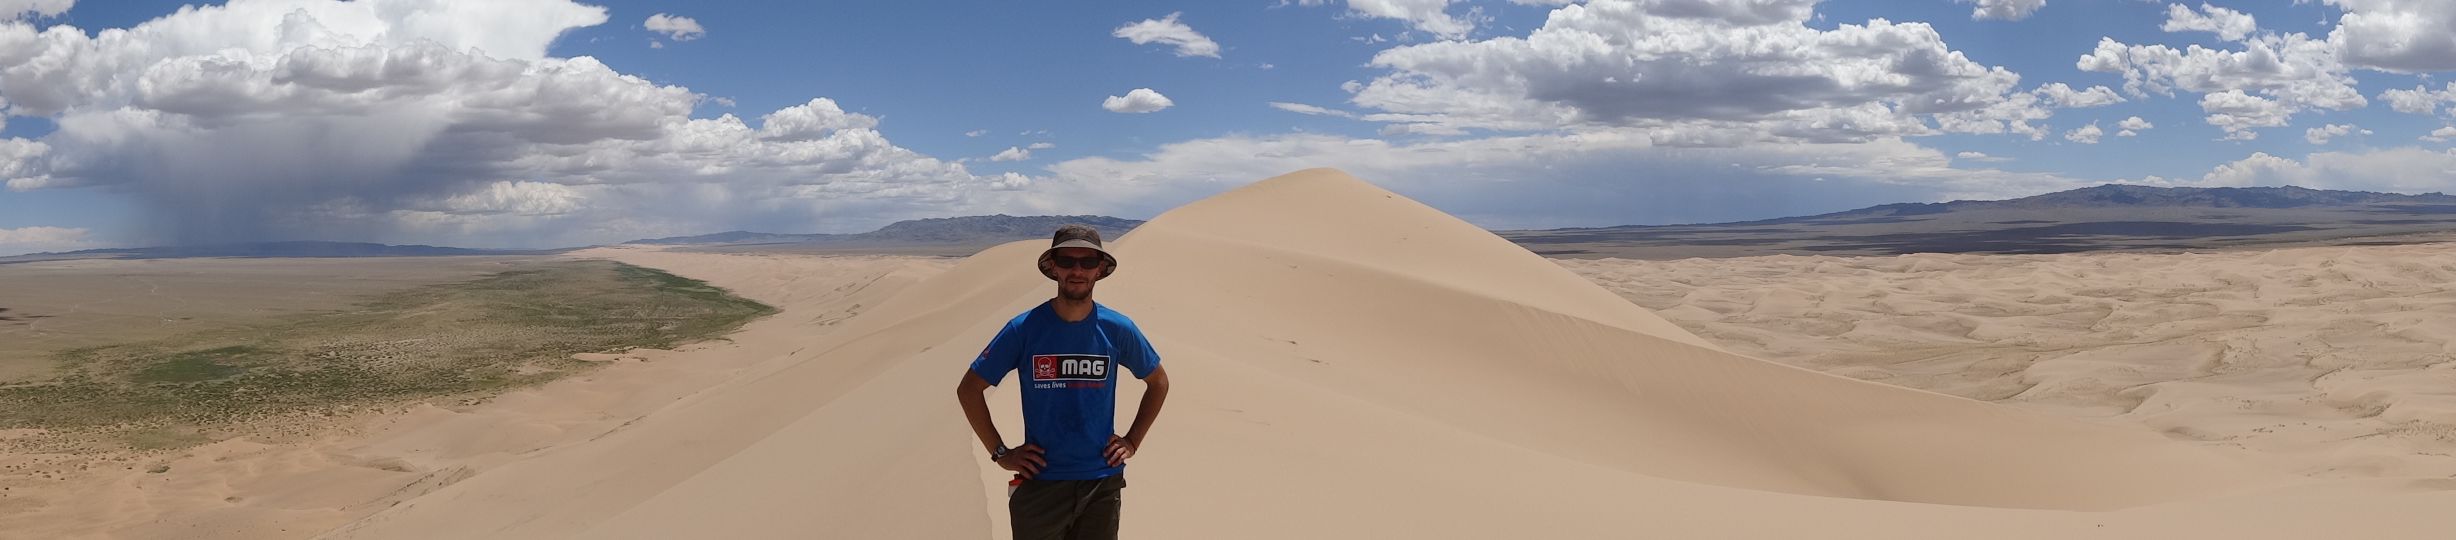 Jon on top of the tallest sand dunes in the Gobi Desert